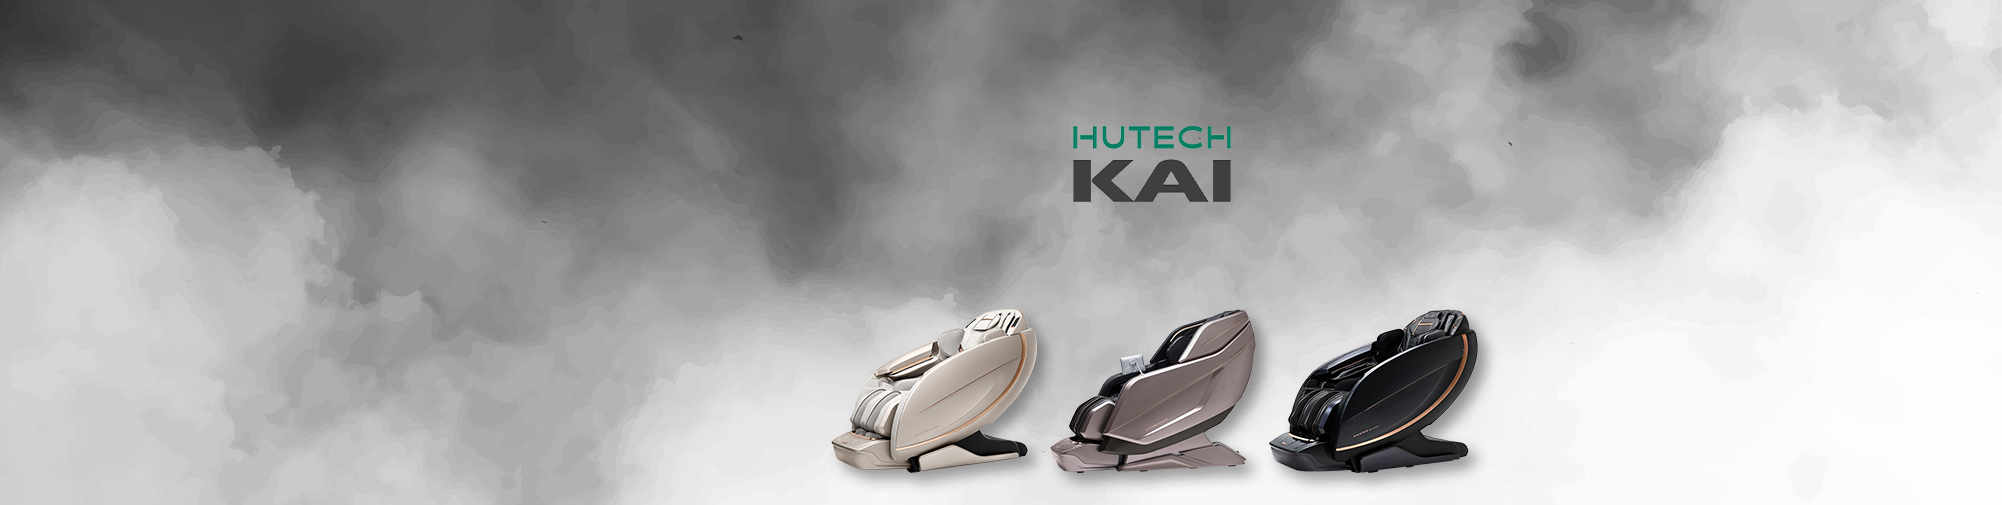 HUTECH KAI | Svijet stolica za masažu